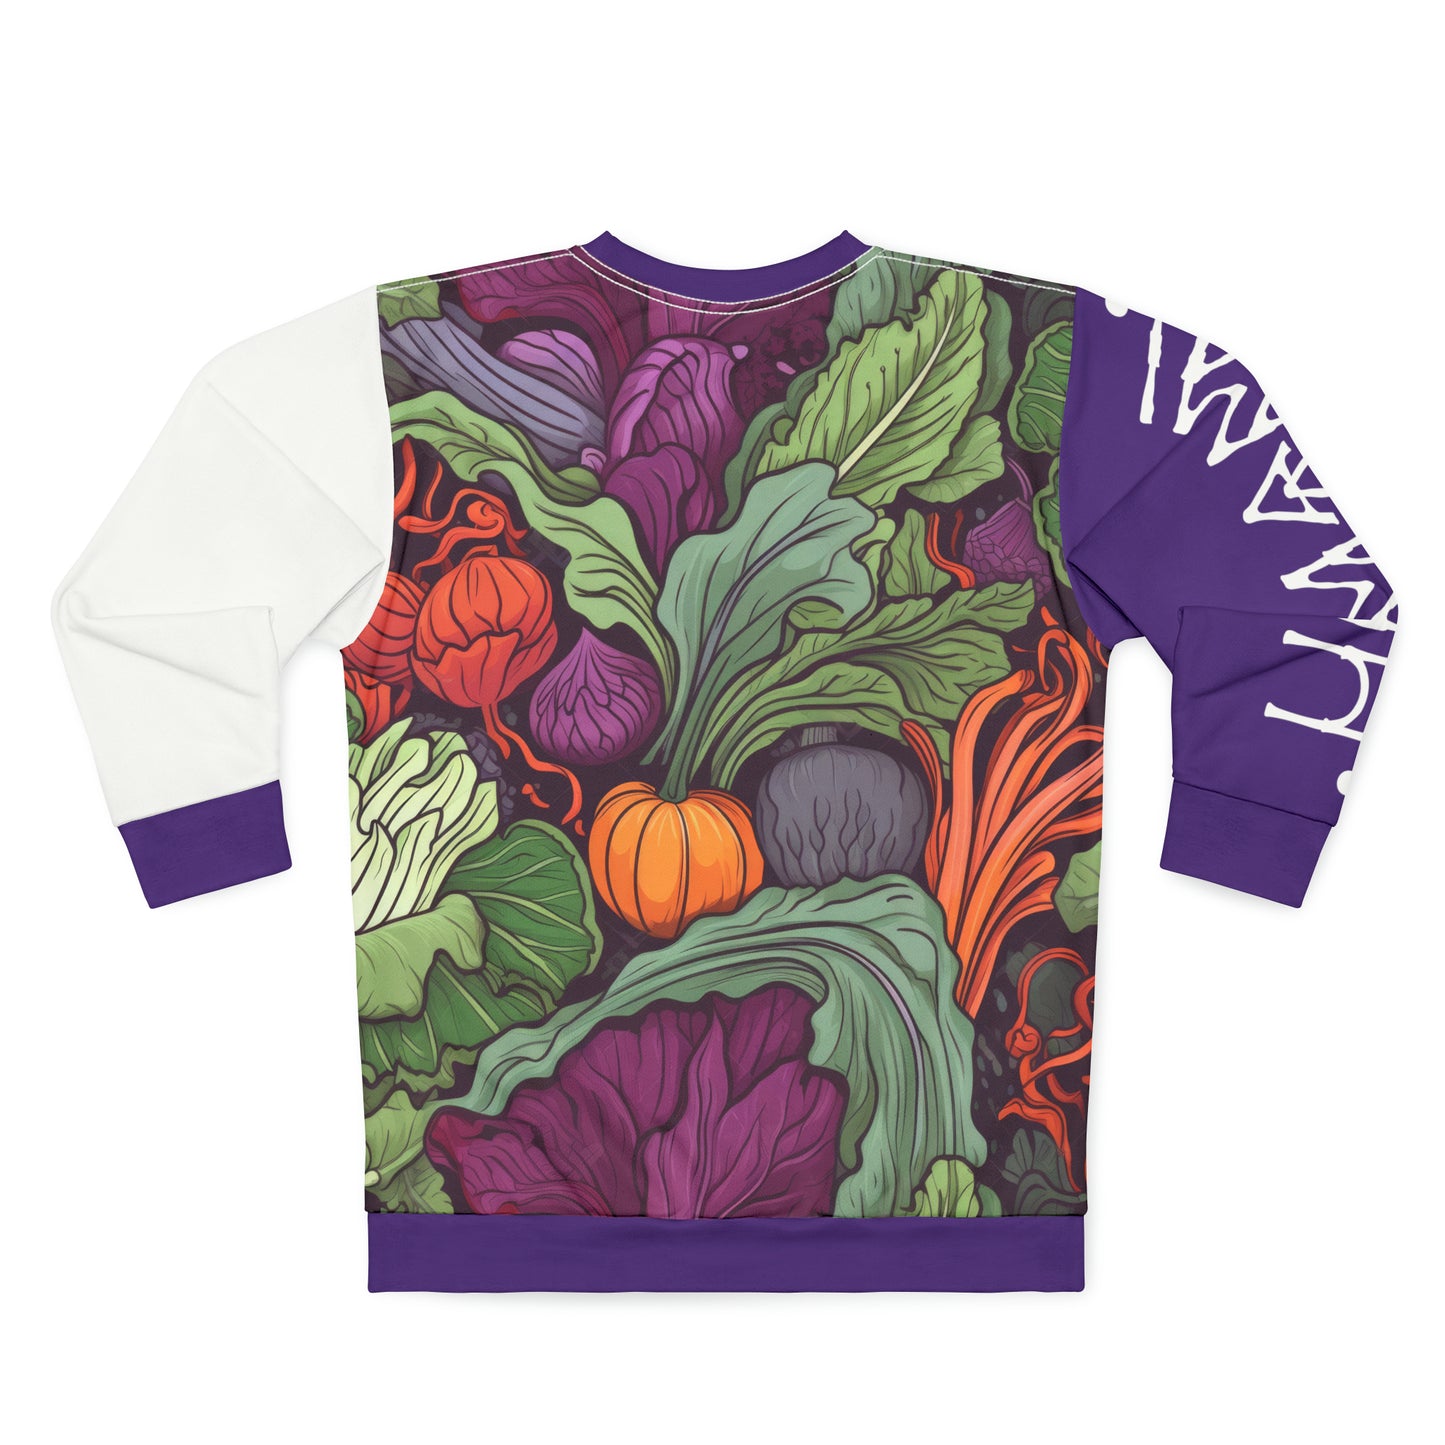 Unisex Sweatshirt Vegetable Purple White Sleeve 